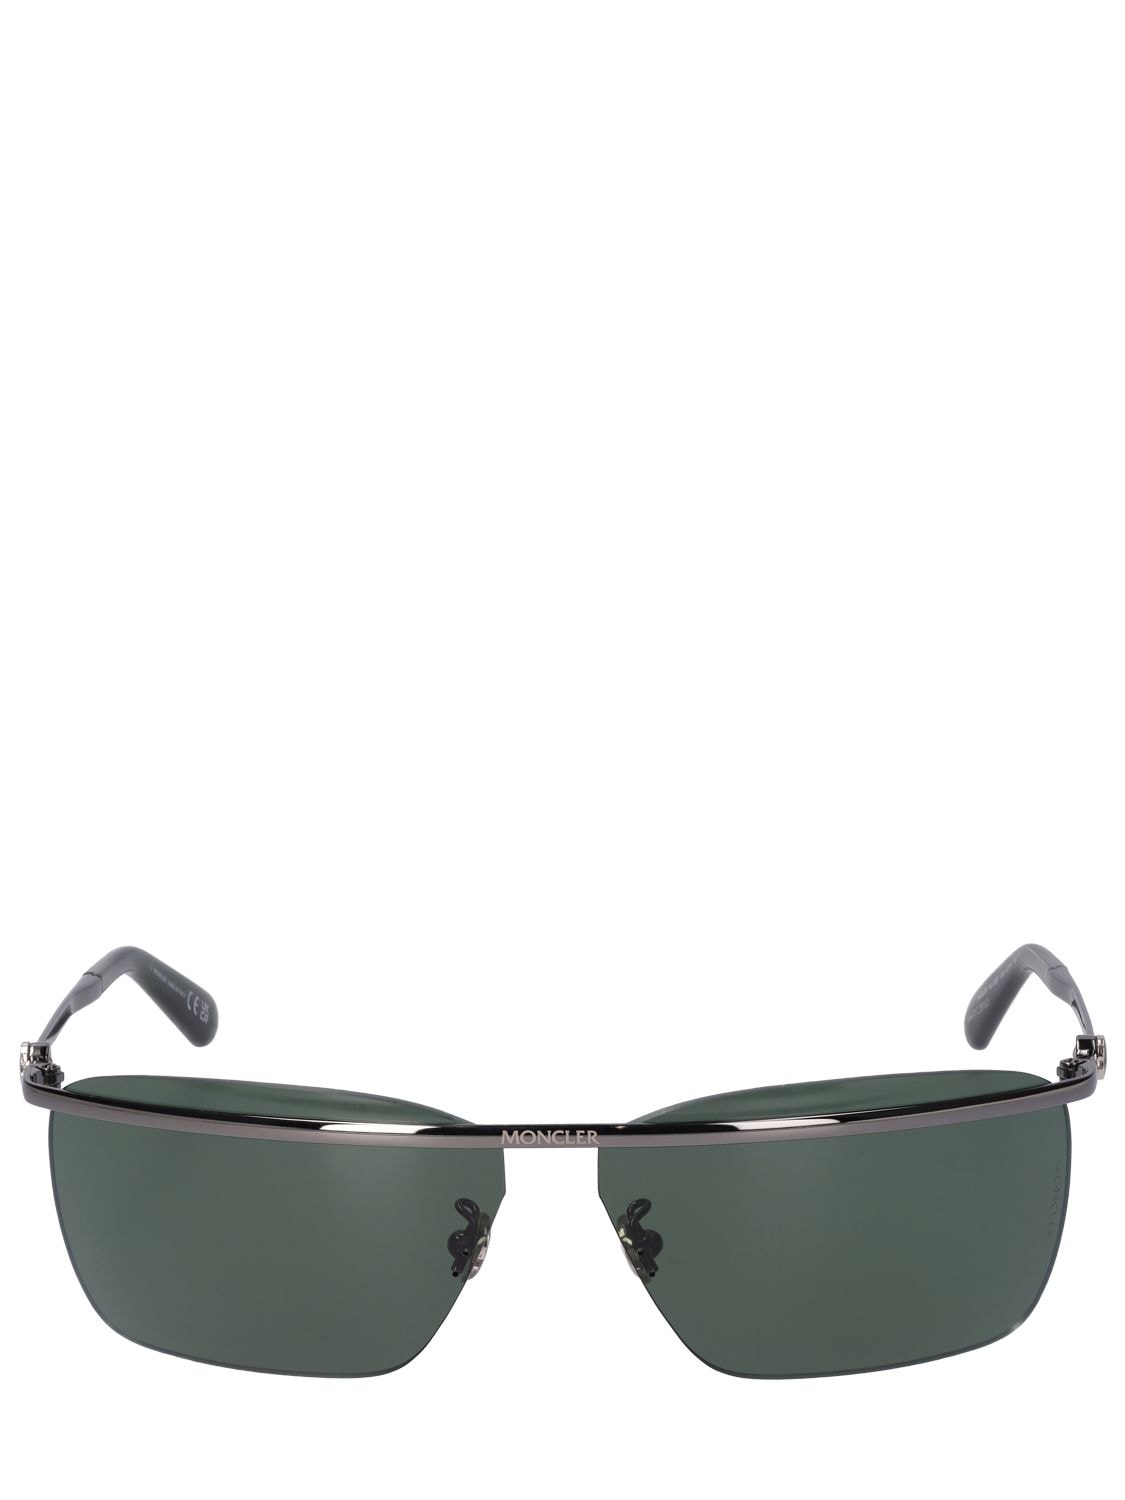 Moncler Niveler Sunglasses In Ruthenium,green